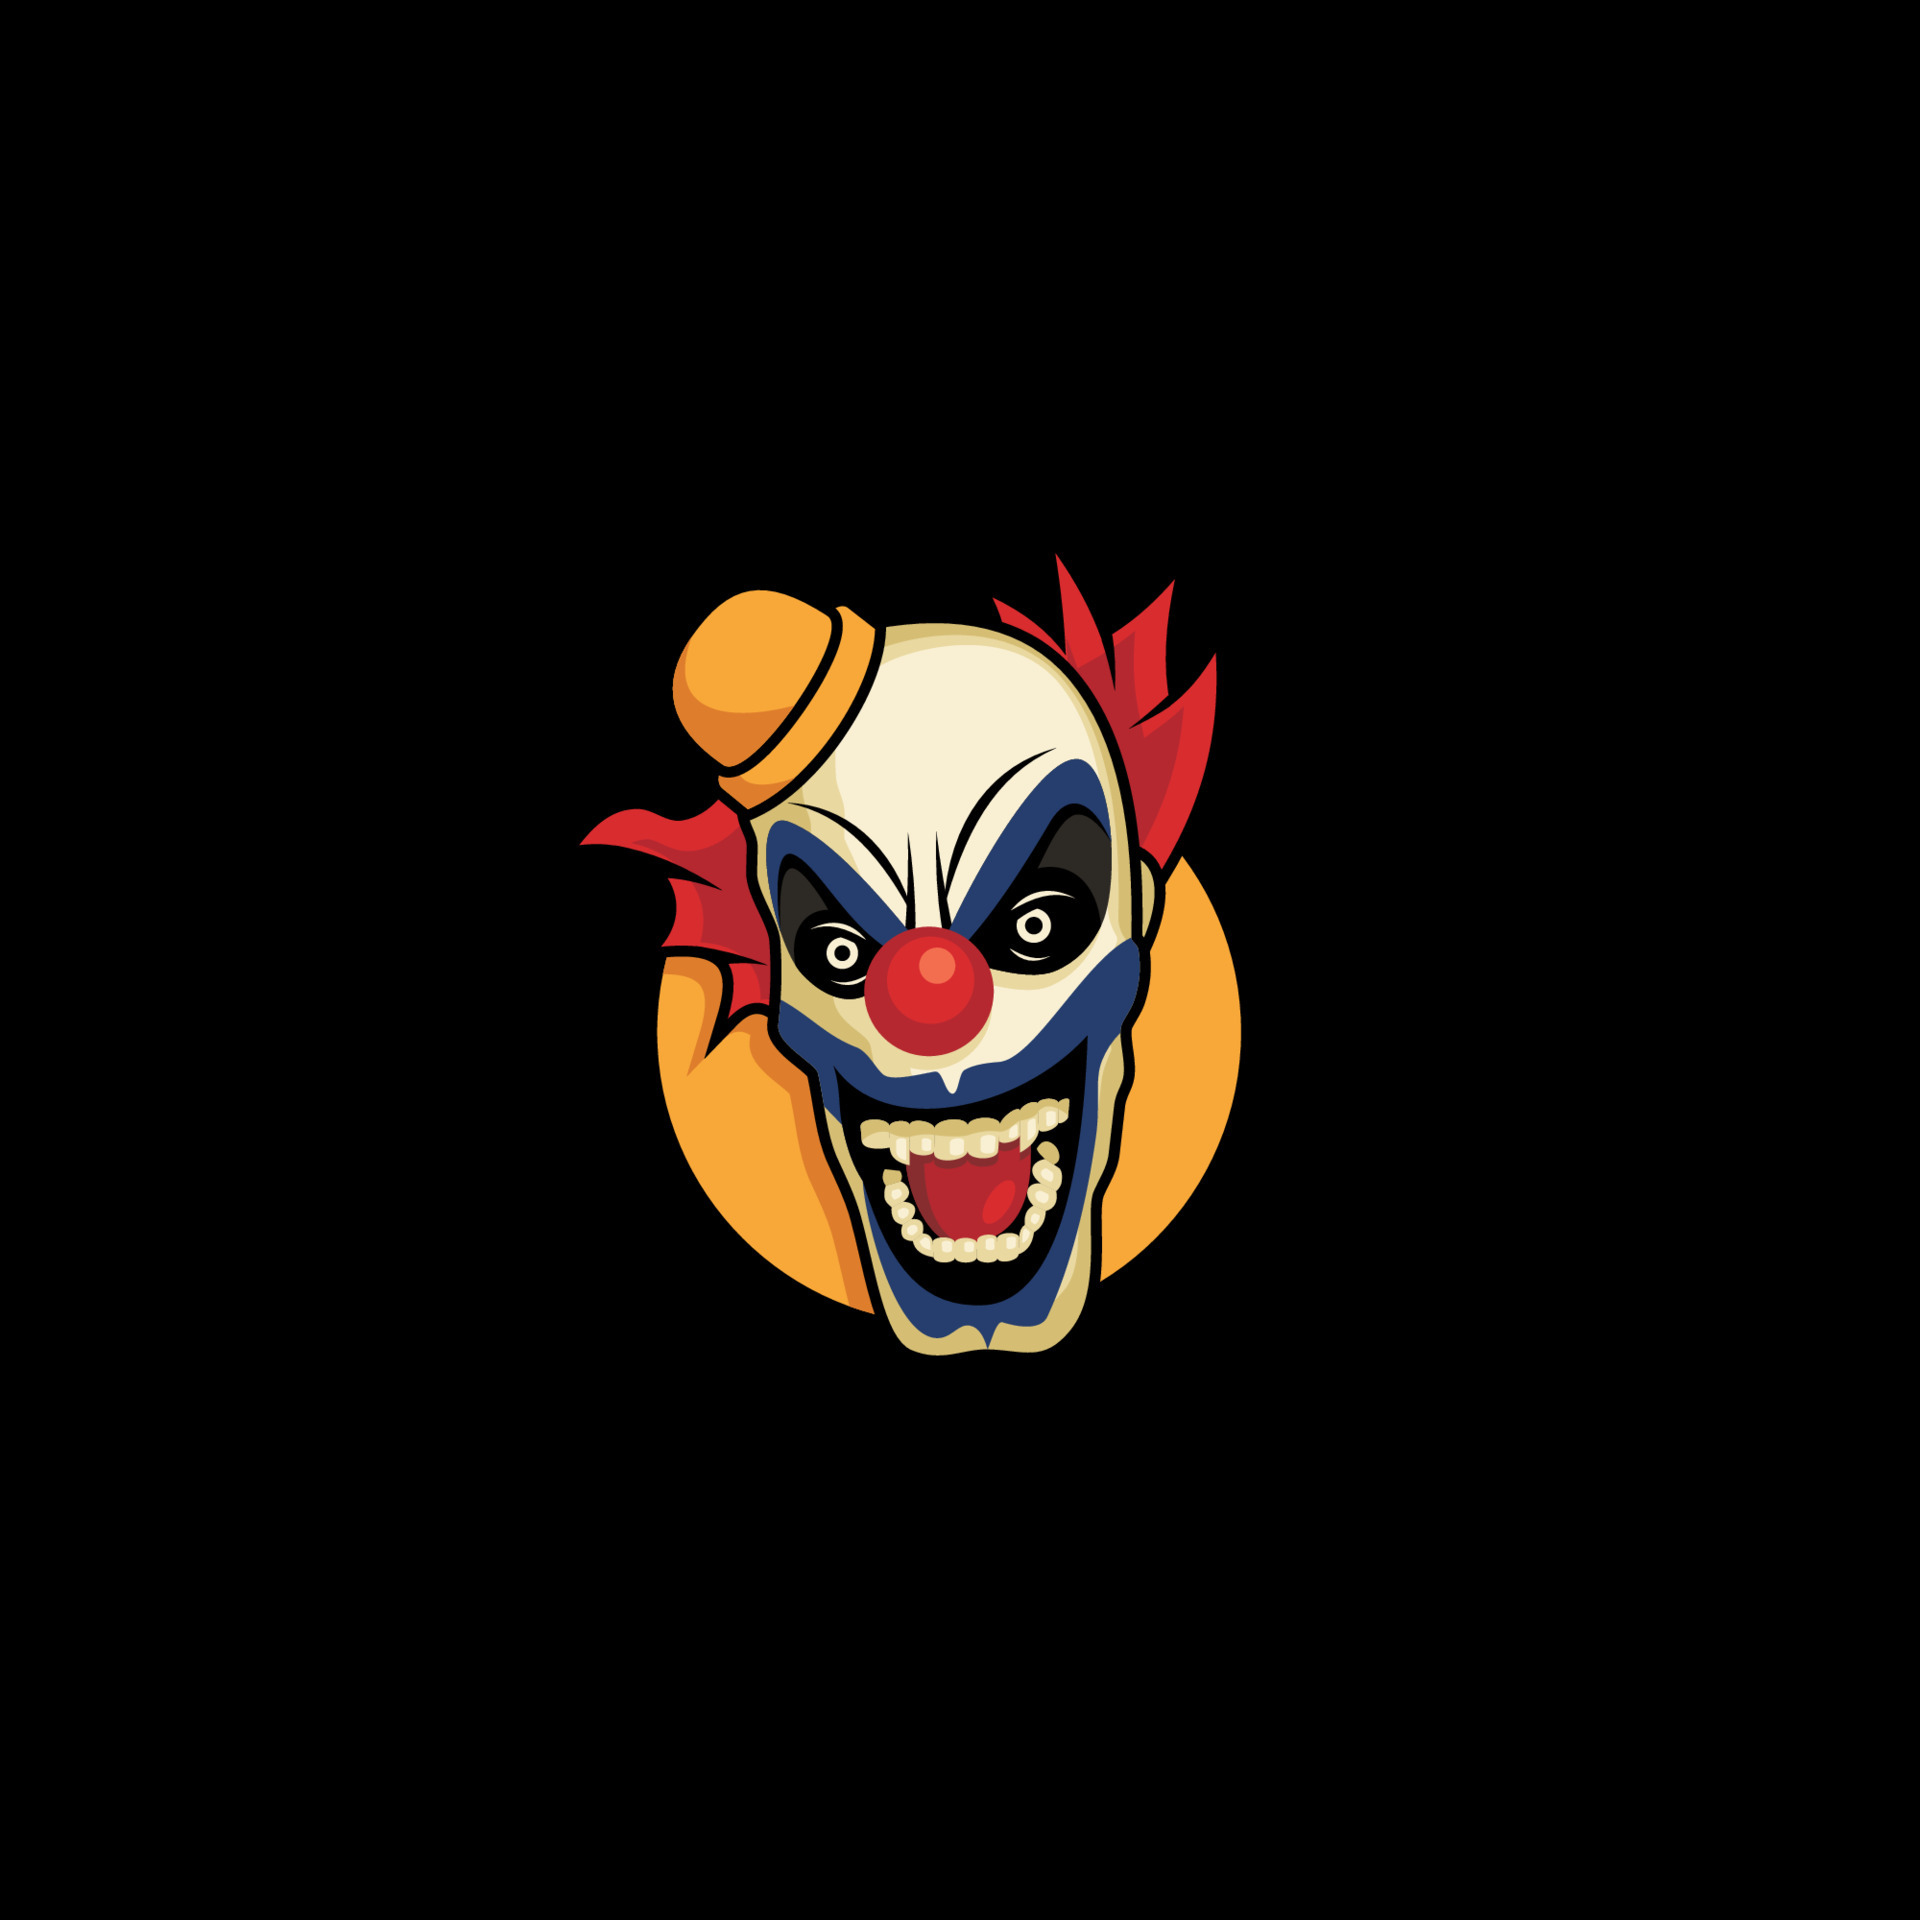 Palhaço Assustador Personagem Modelo Cartão Jogo Ilustração imagem vetorial  de interactimages© 549803598